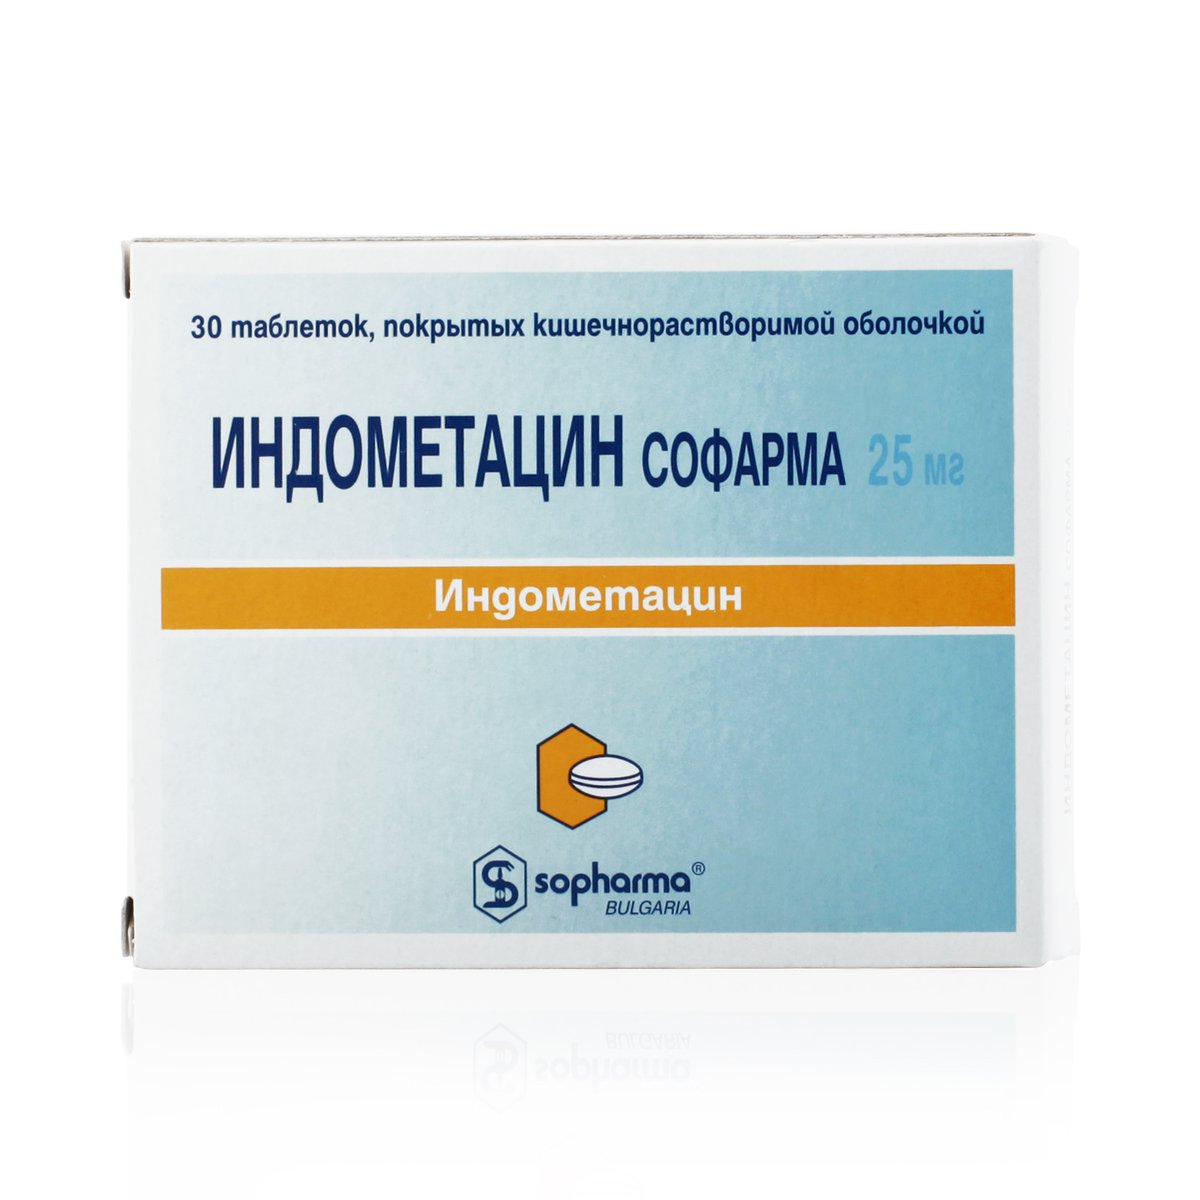 Индометацин (таблетки, 30 шт, 25 мг, для приема внутрь) - цена,  .